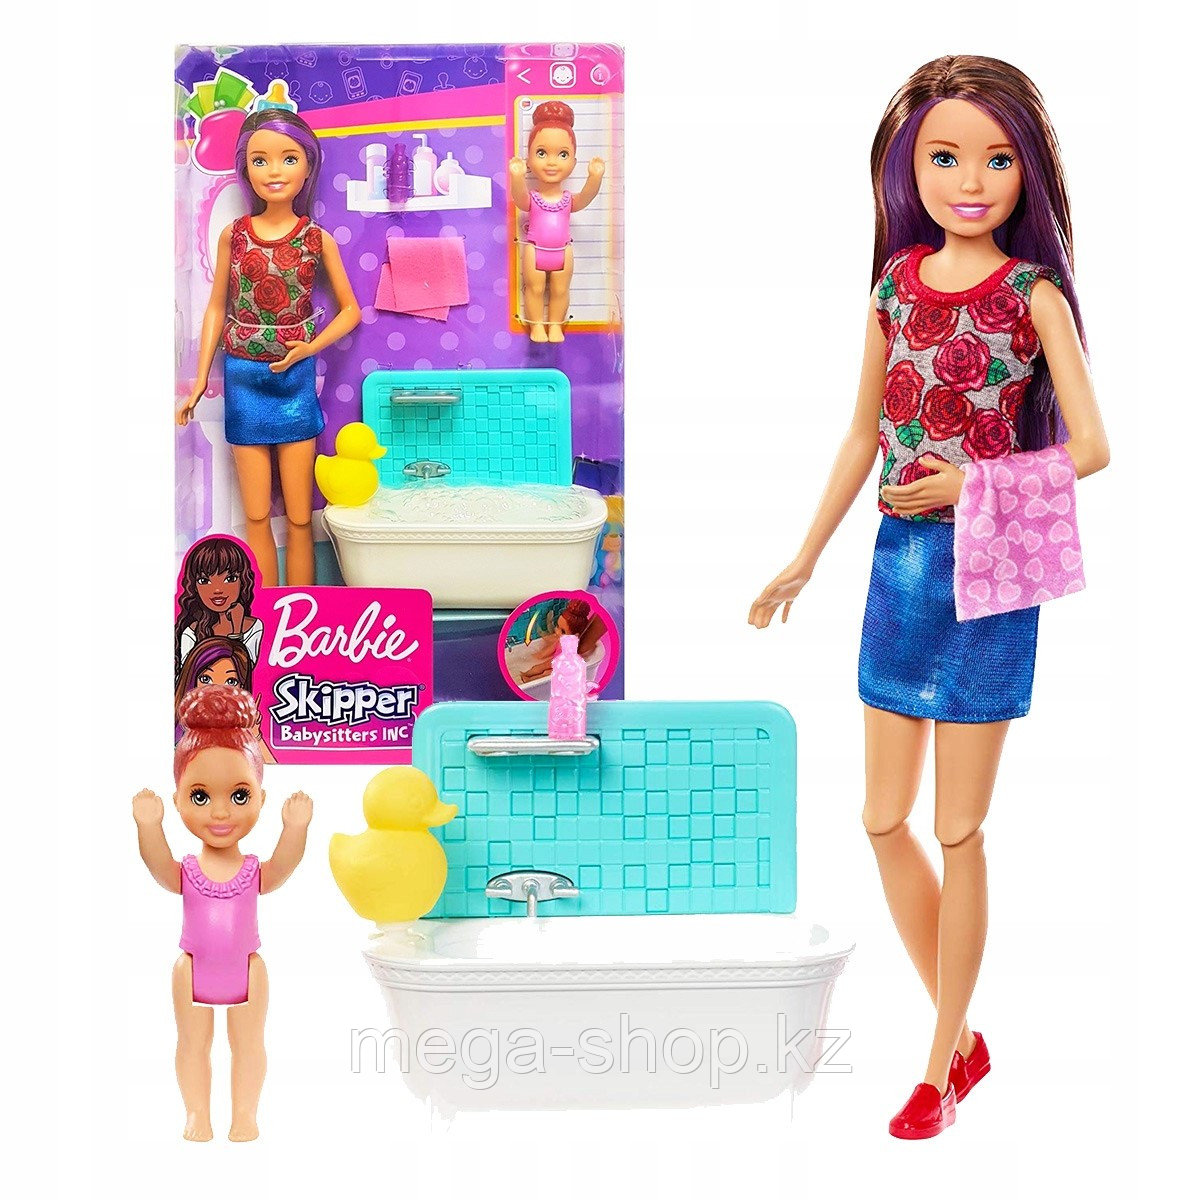 Набор Barbie Няня Скиппер с малышкой оригинал от mattel. Barbie skipper babysitters inc.